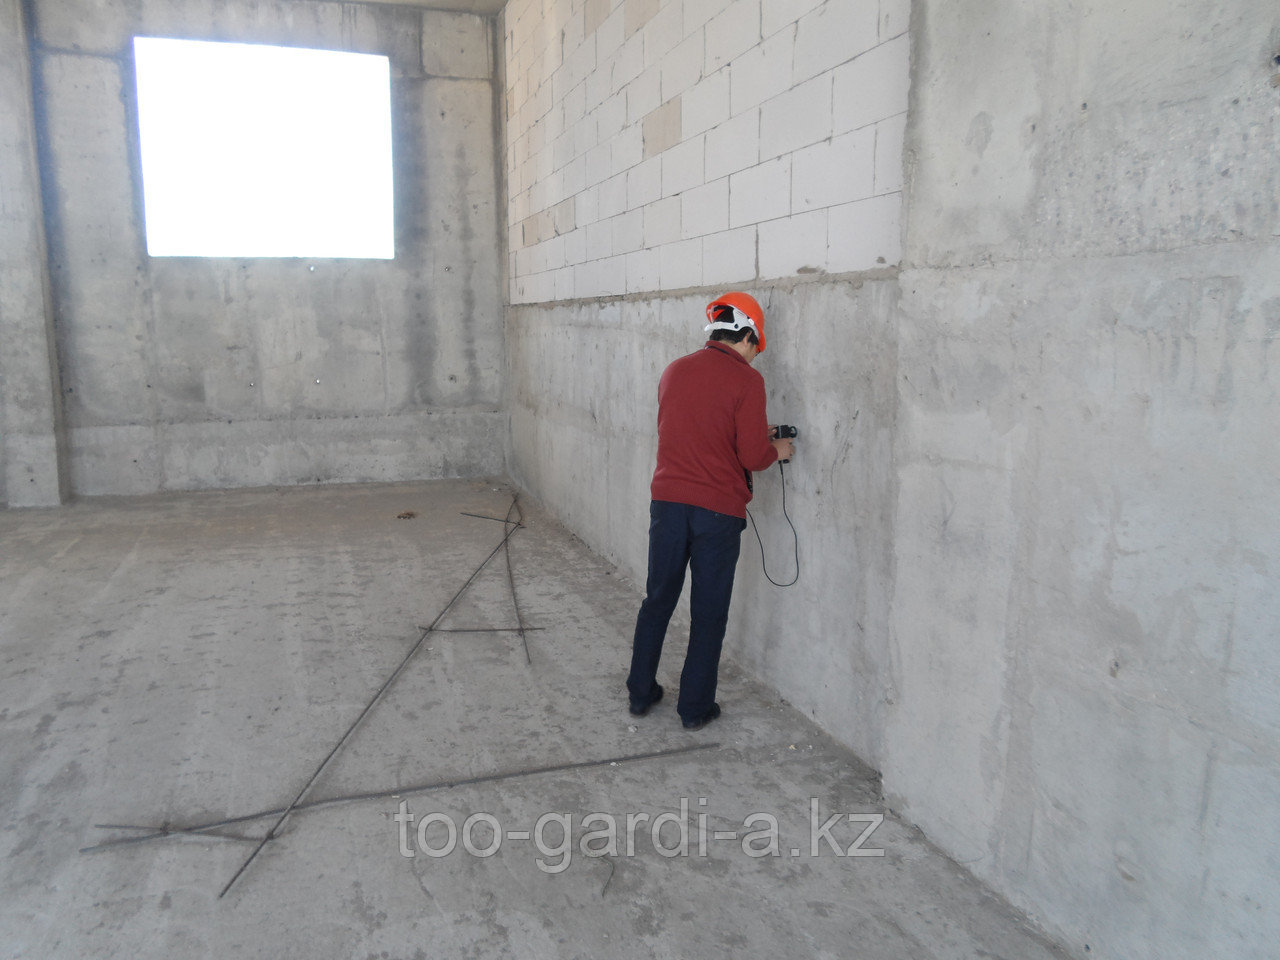 Техническое обследование зданий и сооружений Акмолинская область Астана